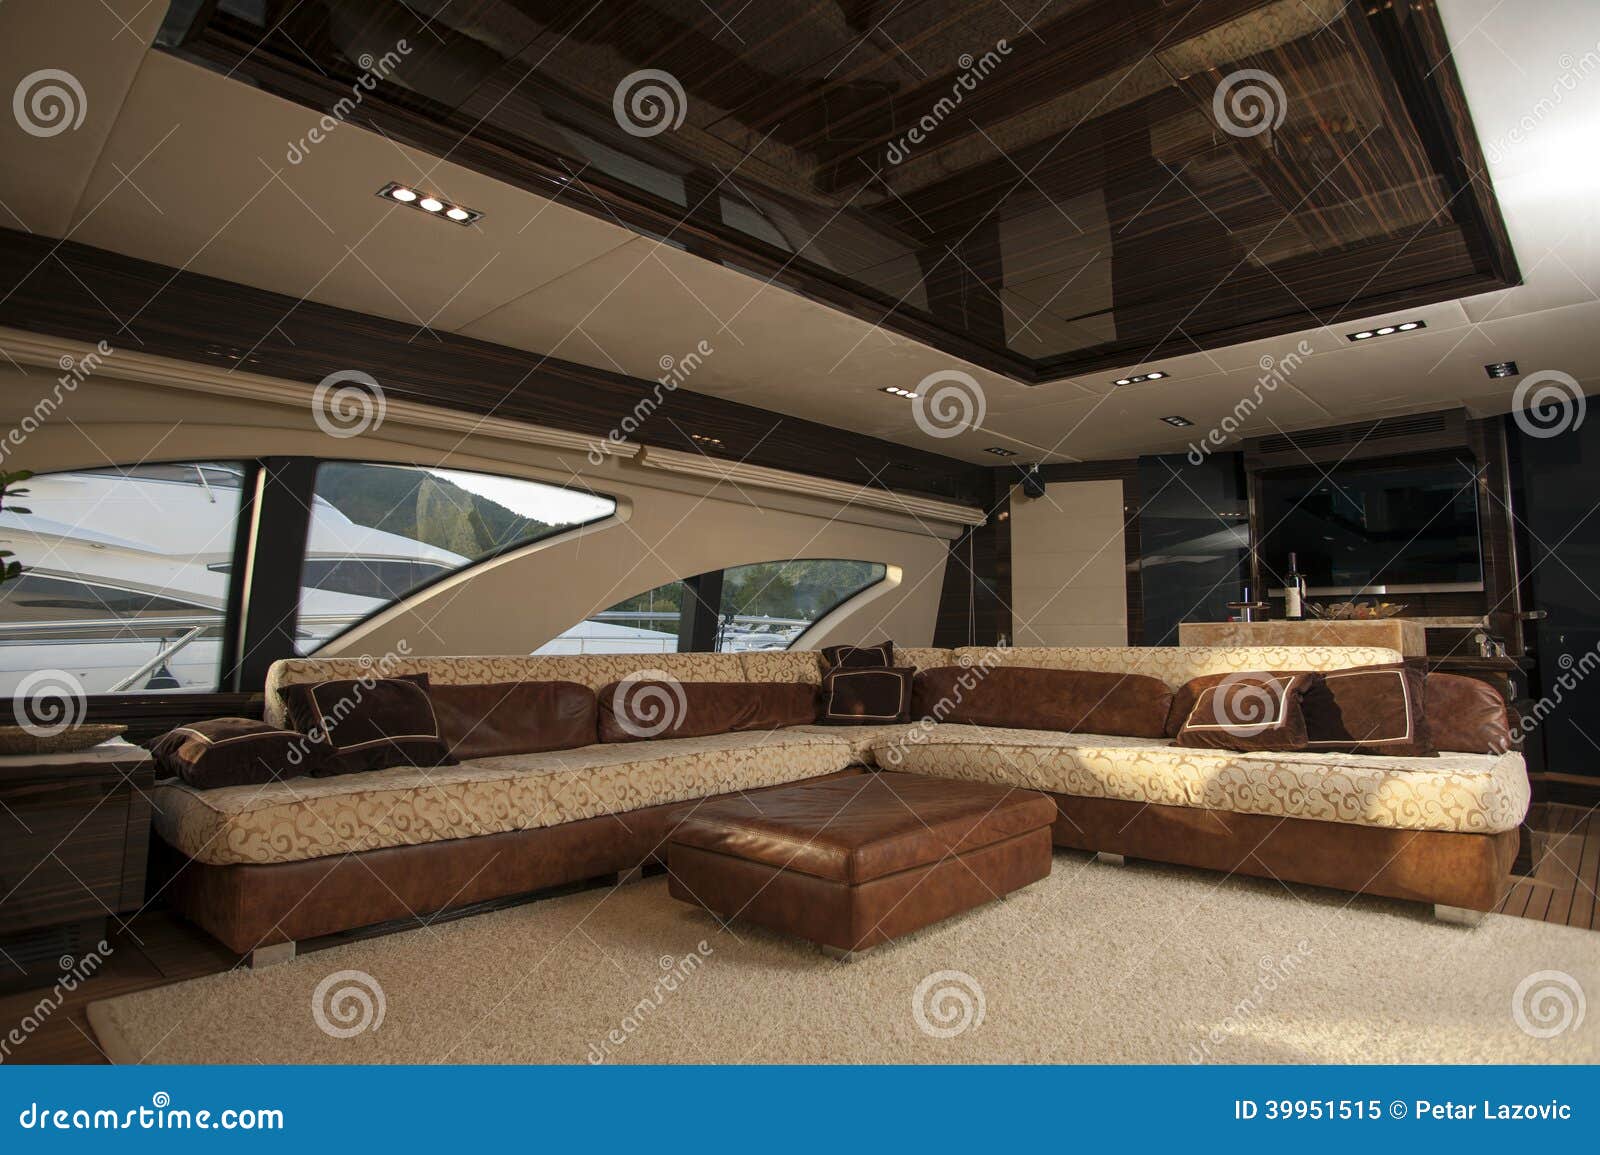 ship interior, comfortable sailboat cabin, expensive wooden design 